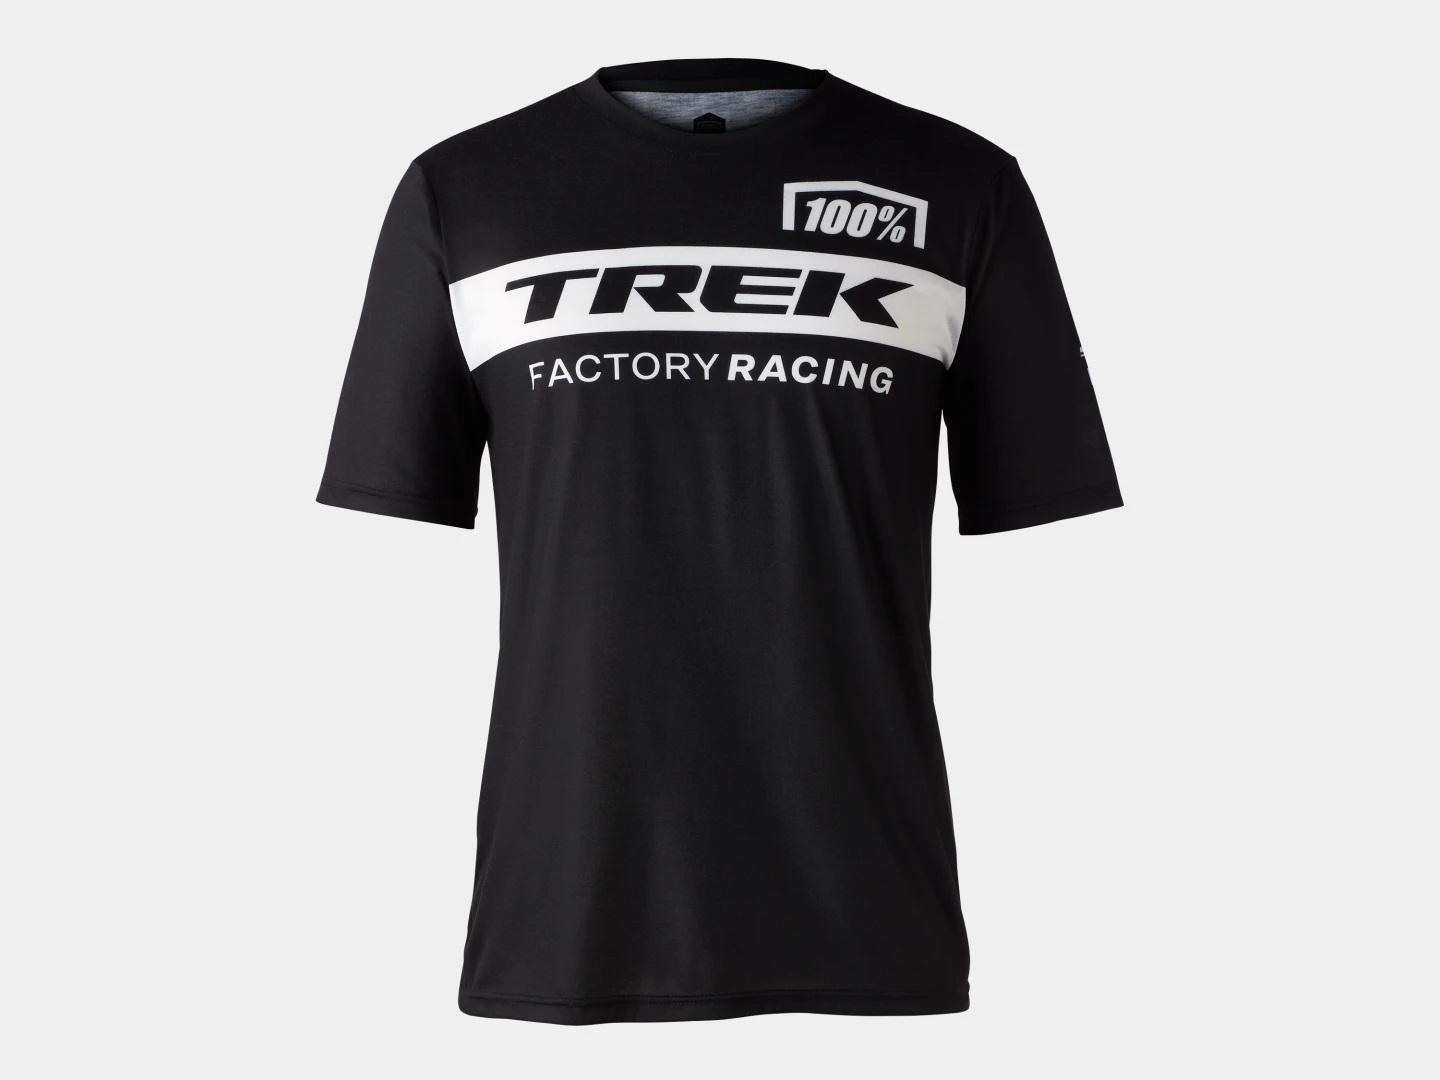 Funkční triko s dlouhými rukávy 100% Trek Factory Racing ČERNÁ S